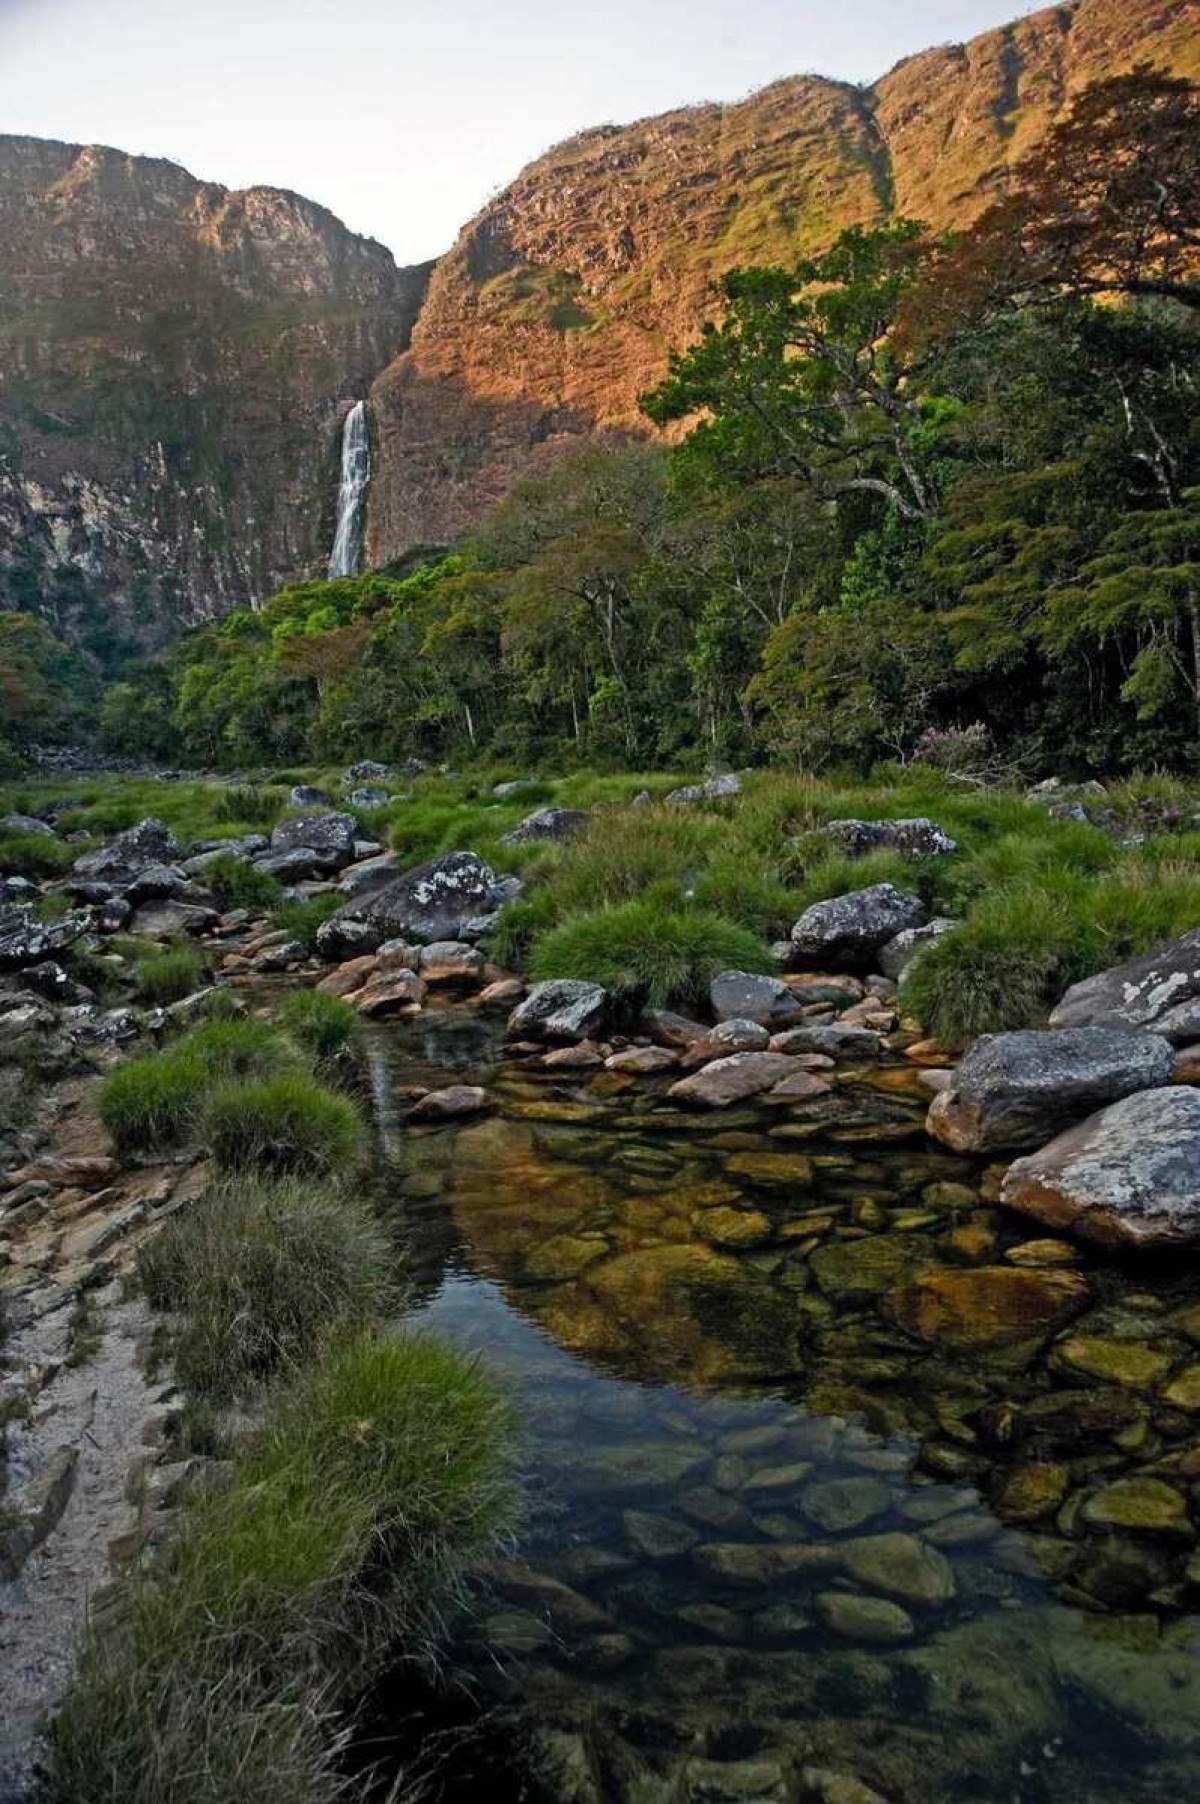 Localizada em São Roque de Minas, a Cachoeira Casca d'Anta com 186 metros de queda d'água está emoldurada em uma parede de rocha